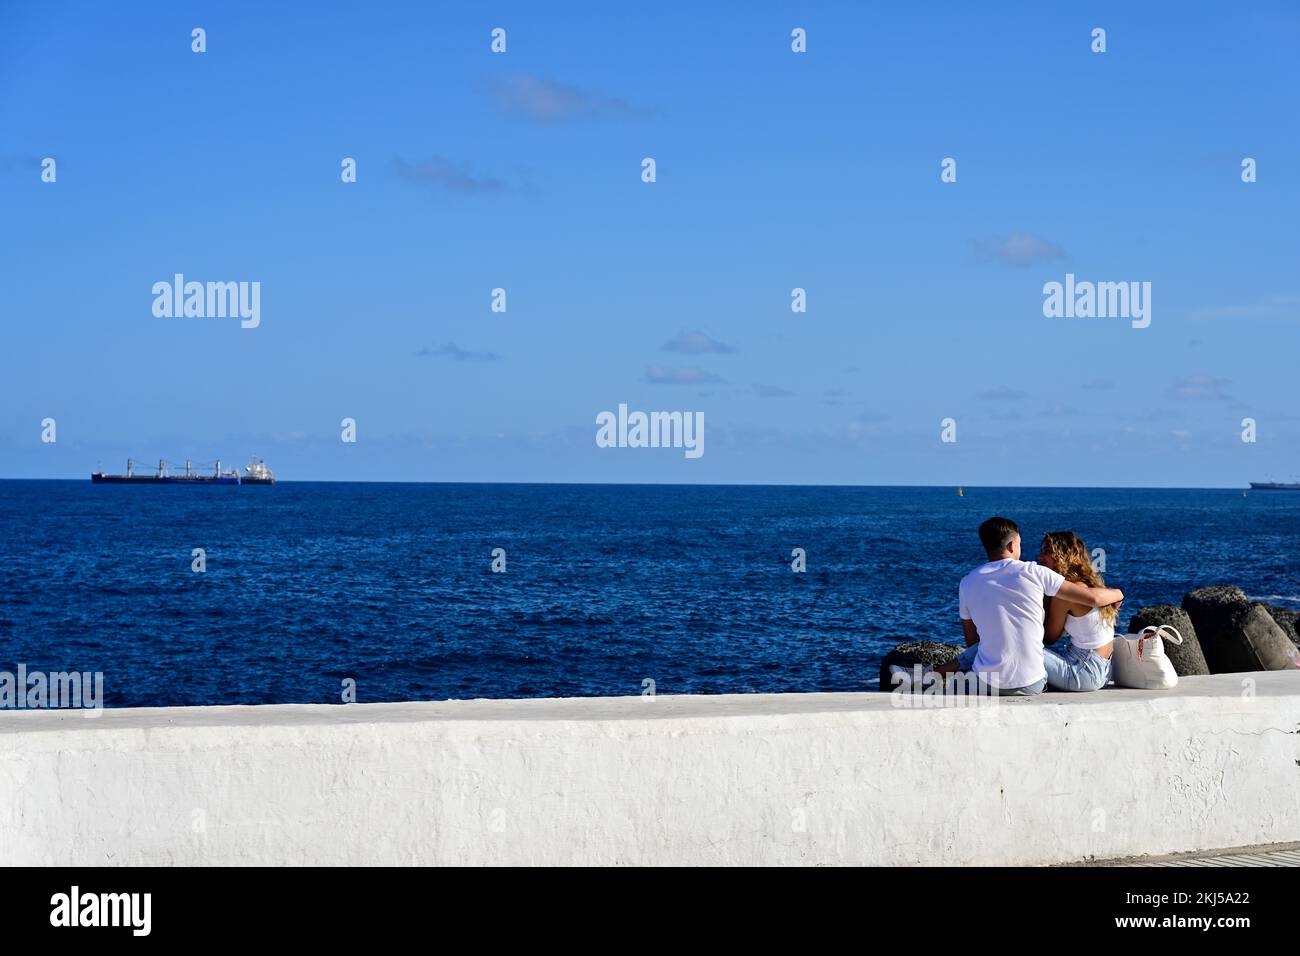 Jeune couple romantique assis sur le mur surplombant l'océan Atlantique avec des navires Banque D'Images